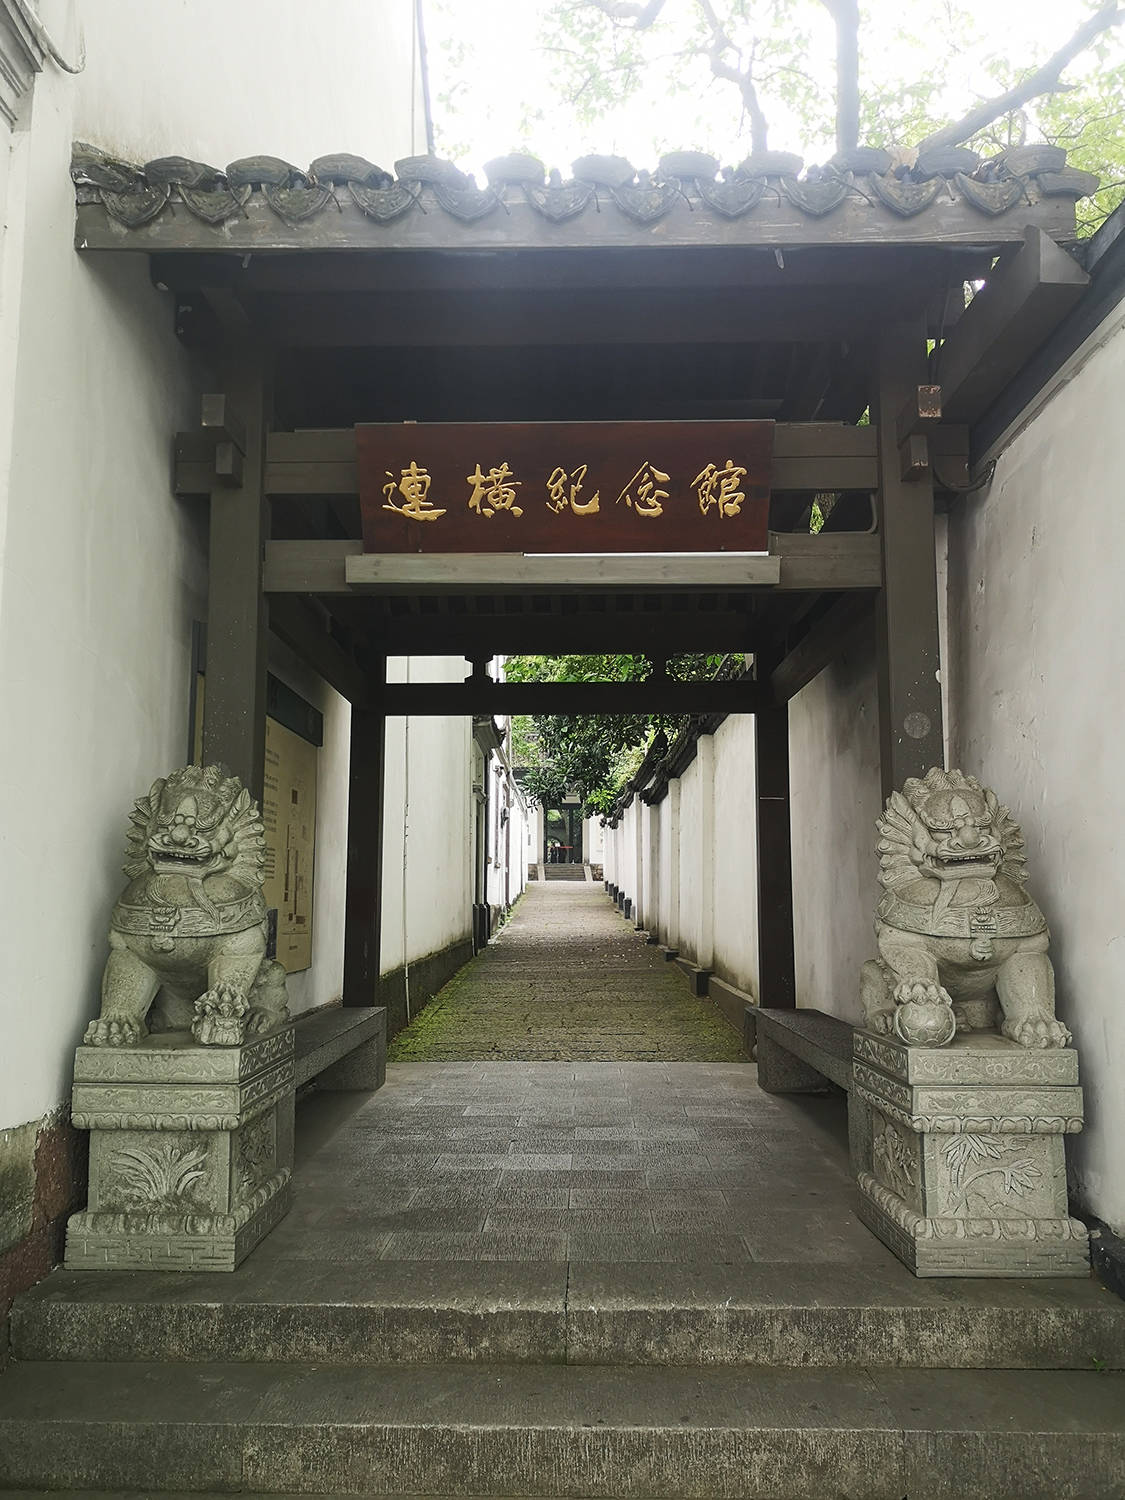 海峡两岸文化交流基地杭州玛瑙寺连横纪念馆